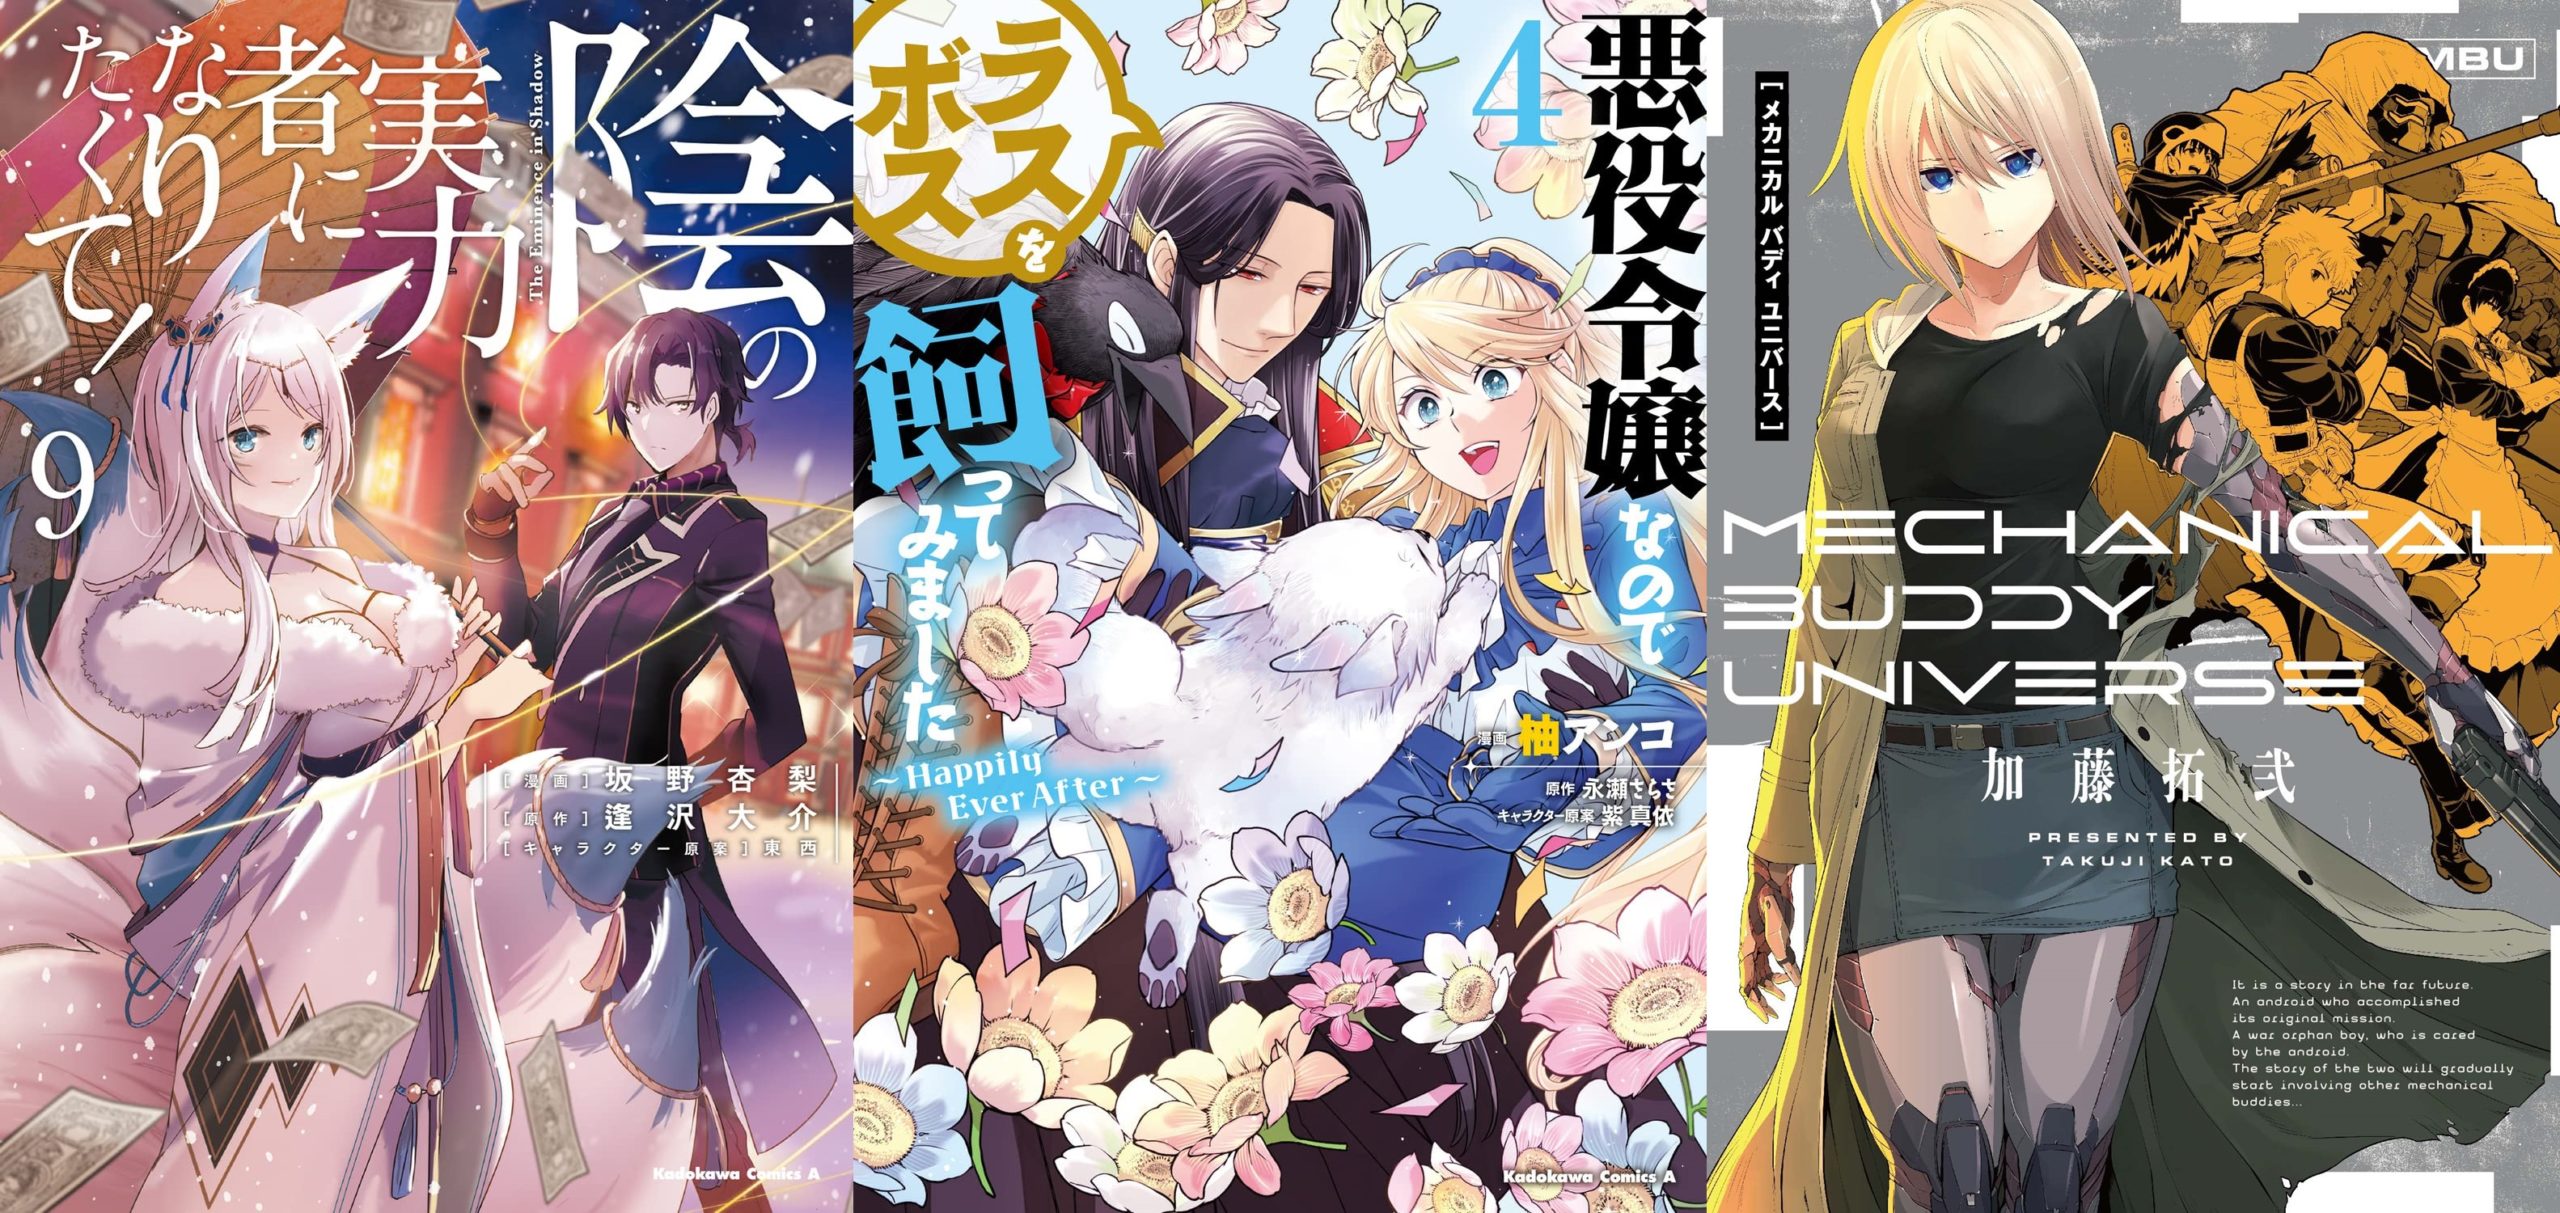 Nendoroid de Mikakunin de Shinkoukei - Noticias Anime United - As Melhores  Noticias sobre Anime e Manga